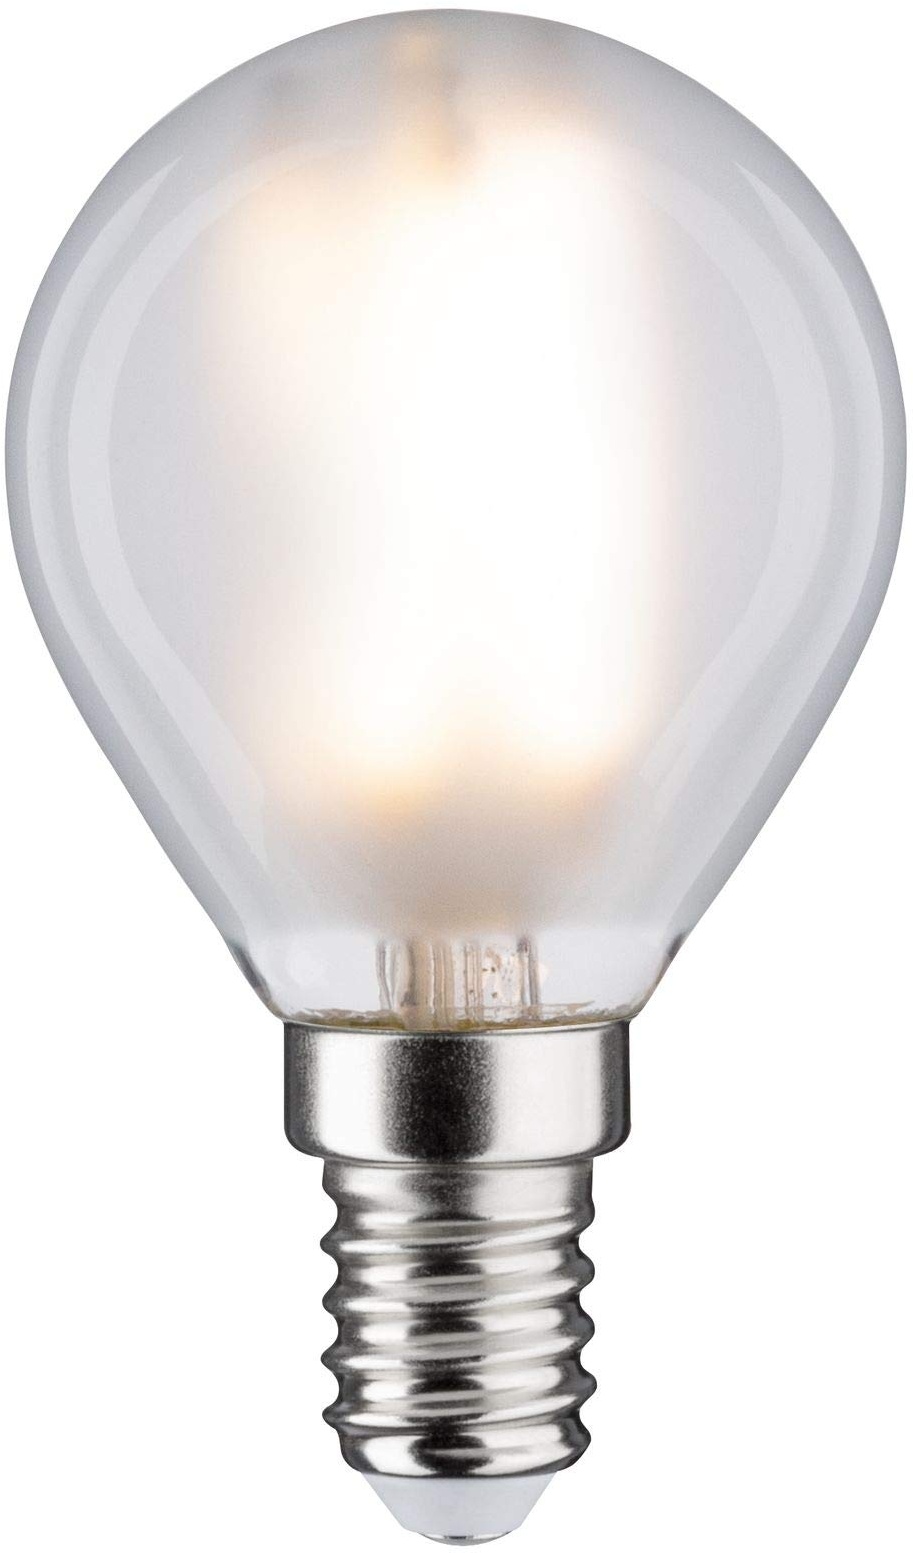 Paulmann 28728 LED Lampe Tropfen 5W dimmbar Leuchtmittel Matt Weiß Beleuchtung Kunststoff Licht 4000K E14